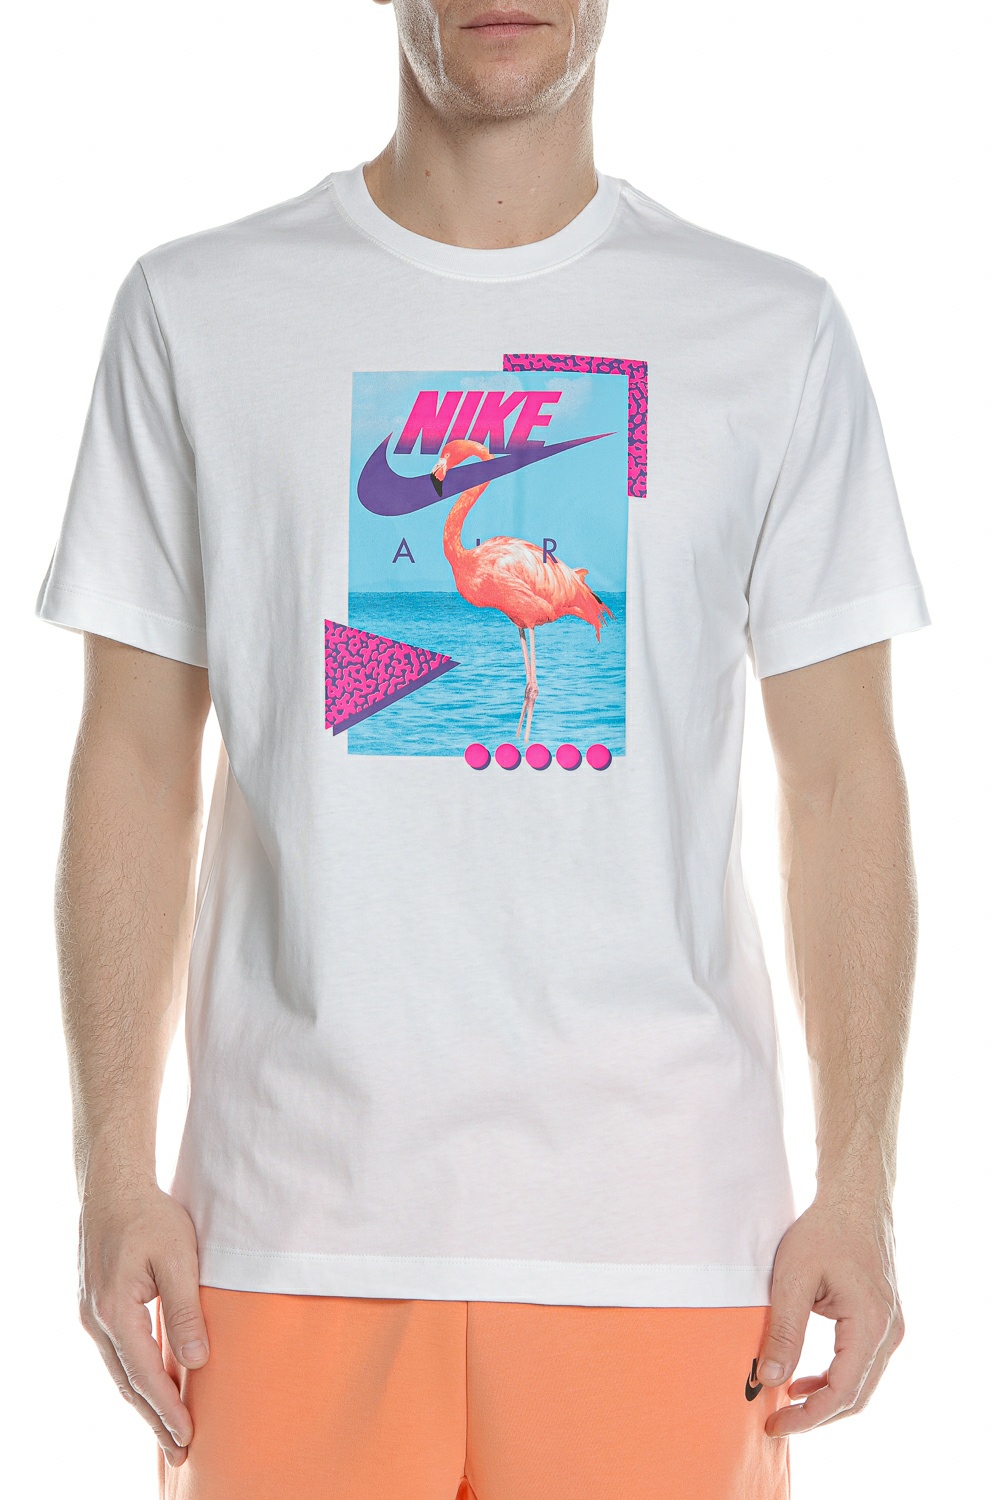 Ανδρικά/Ρούχα/Αθλητικά/T-shirt NIKE - Ανδρικό t-shirt NIKE NSW TEE BEACH FLAMINGO λευκό